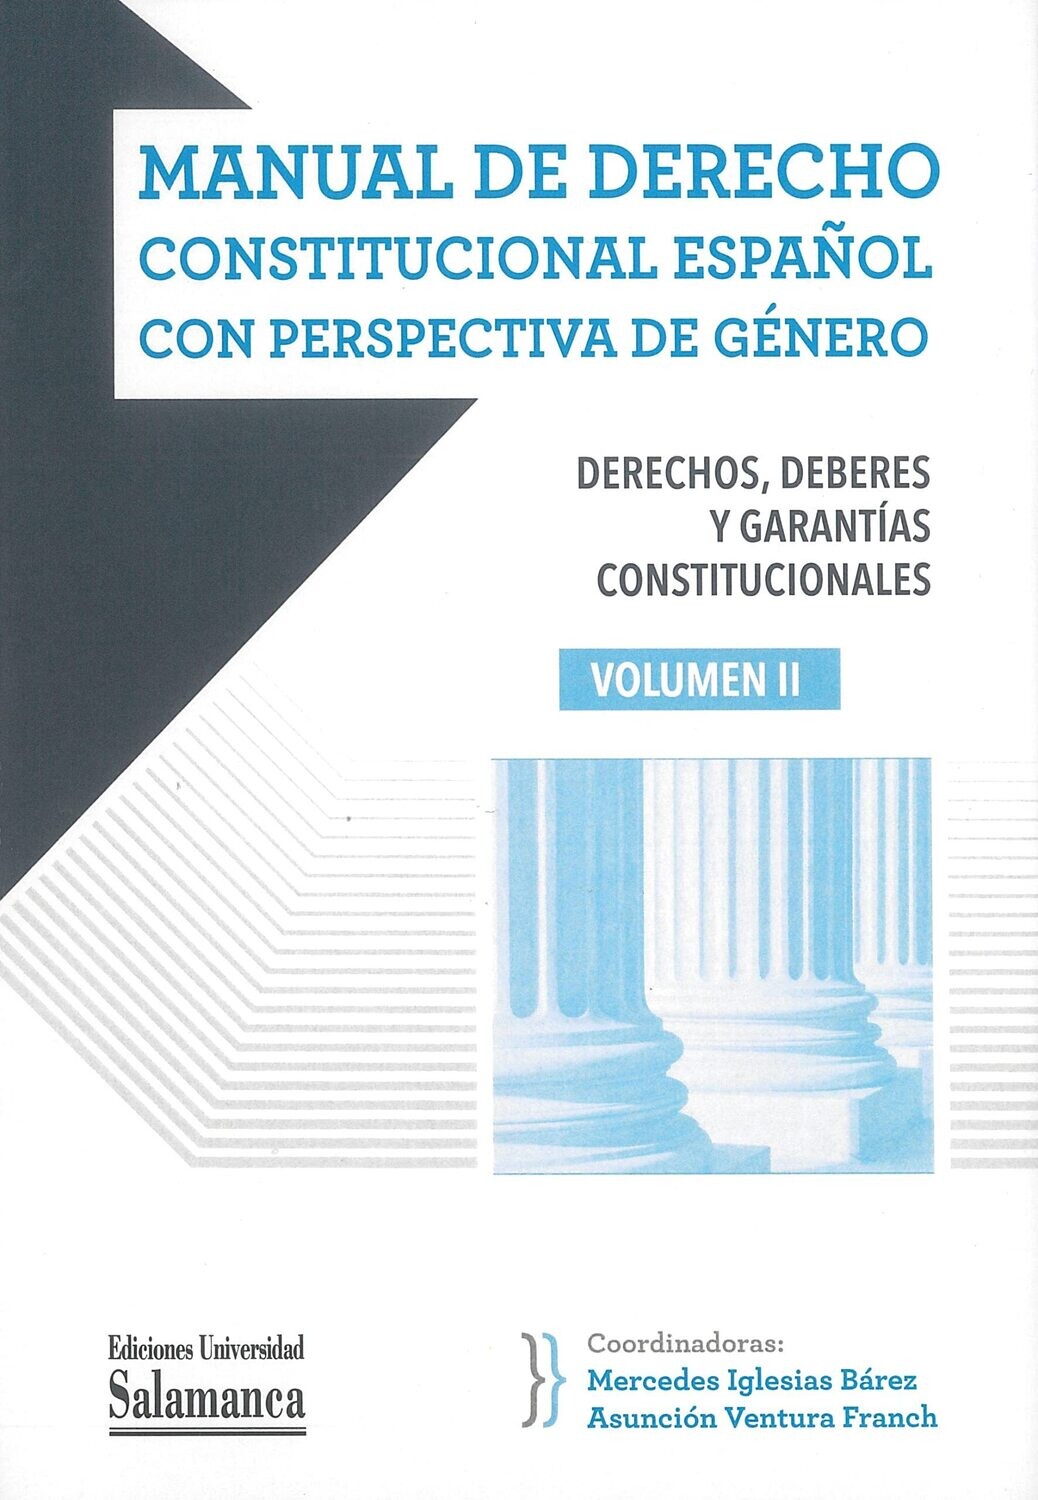 Manual de derecho constitucional español con perspectiva de género. Vol. II (Manuales Universitarios, 95)